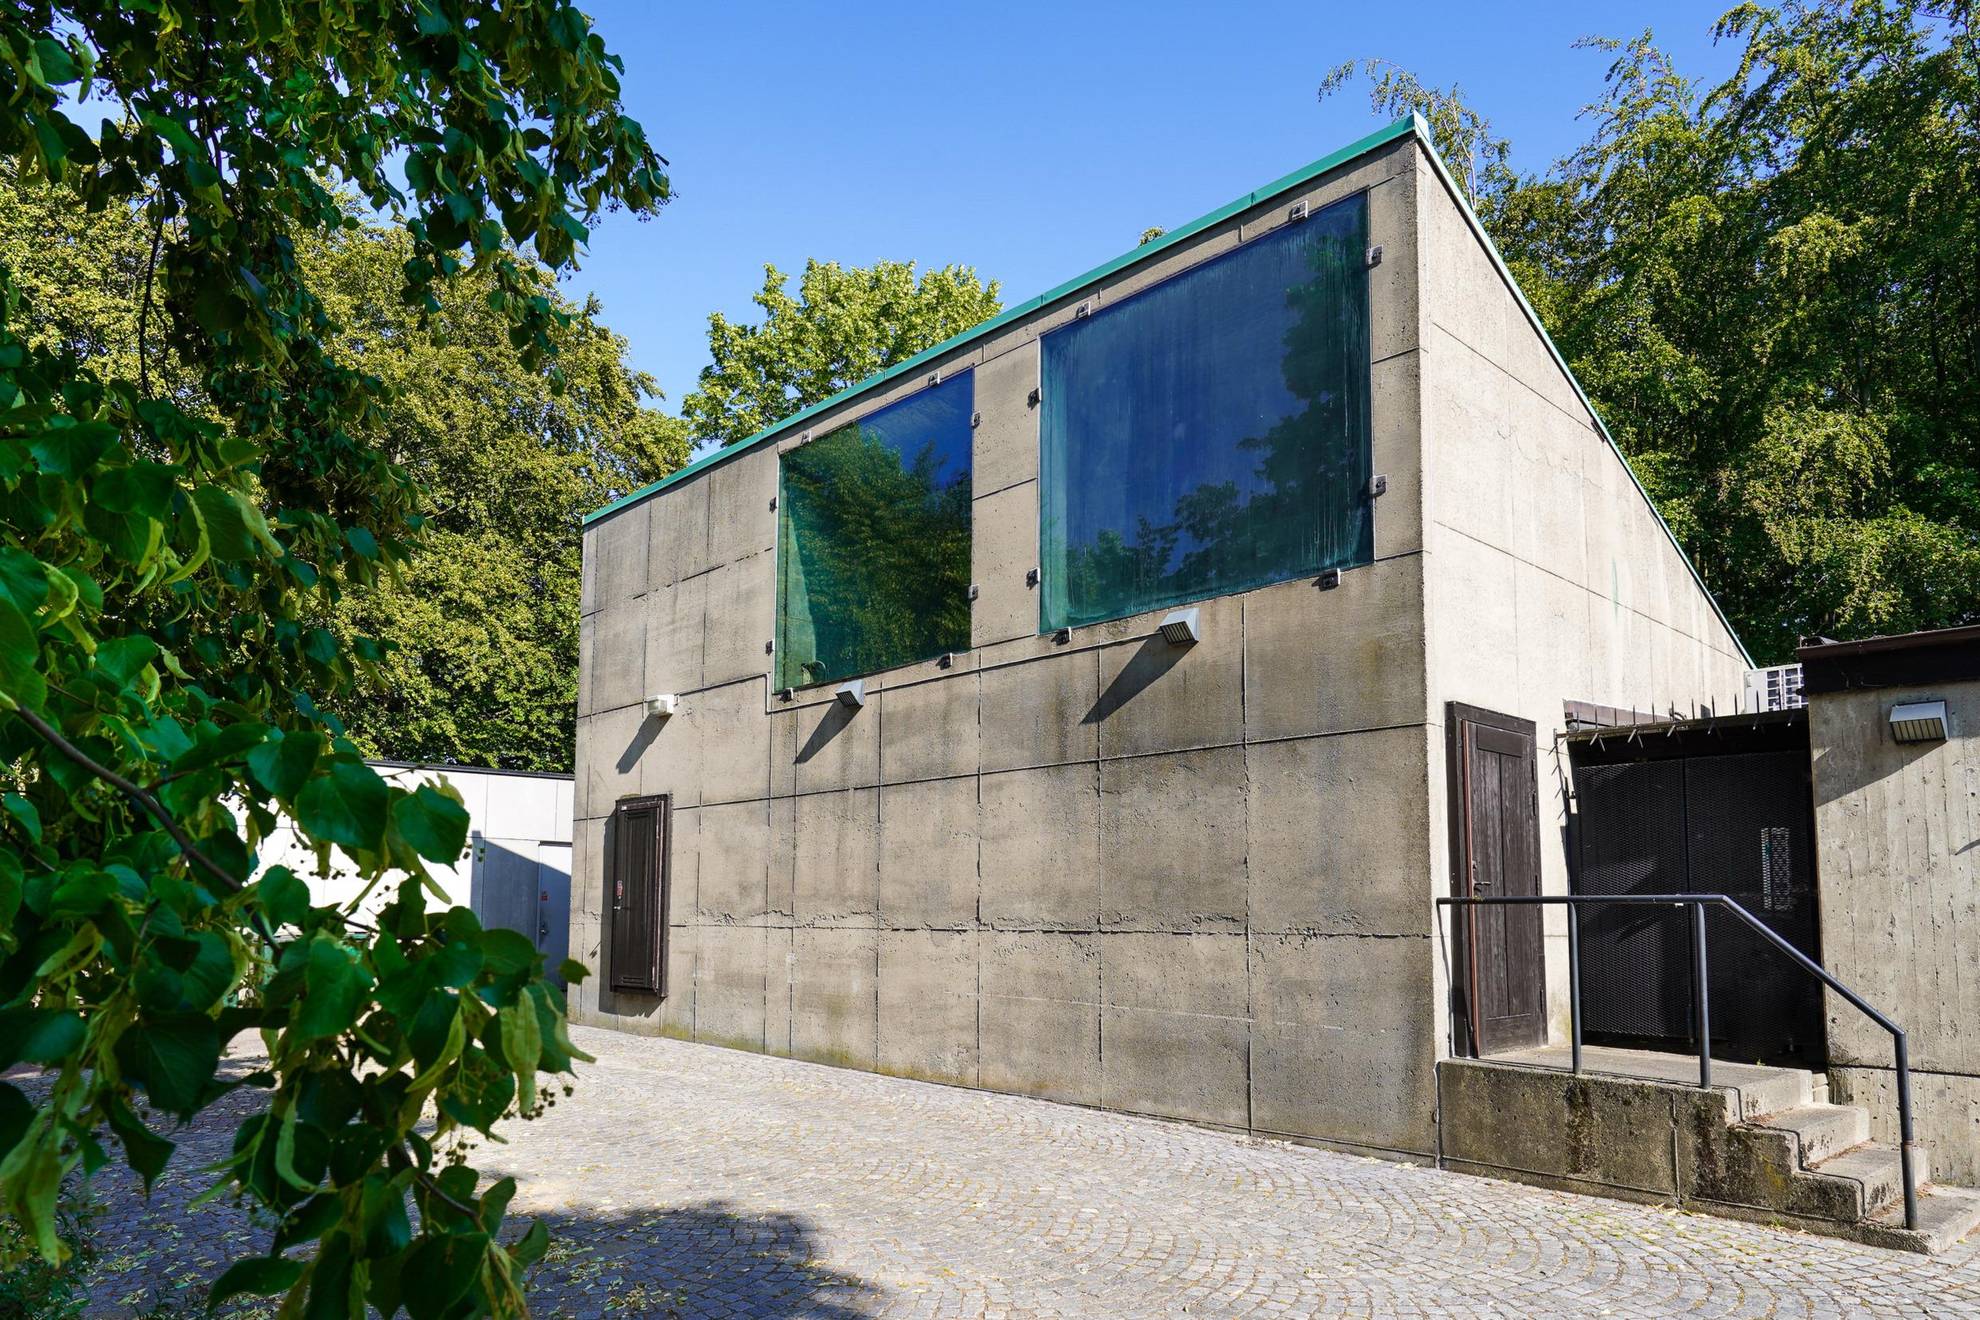 Das Haus mit dem Namen "Der Blumenkiosk" ist ein einfaches Betonhaus, dessen Fenster mit schwarzer Dichtungsmasse befestigt sind. Es ist von Grünflächen umgeben.